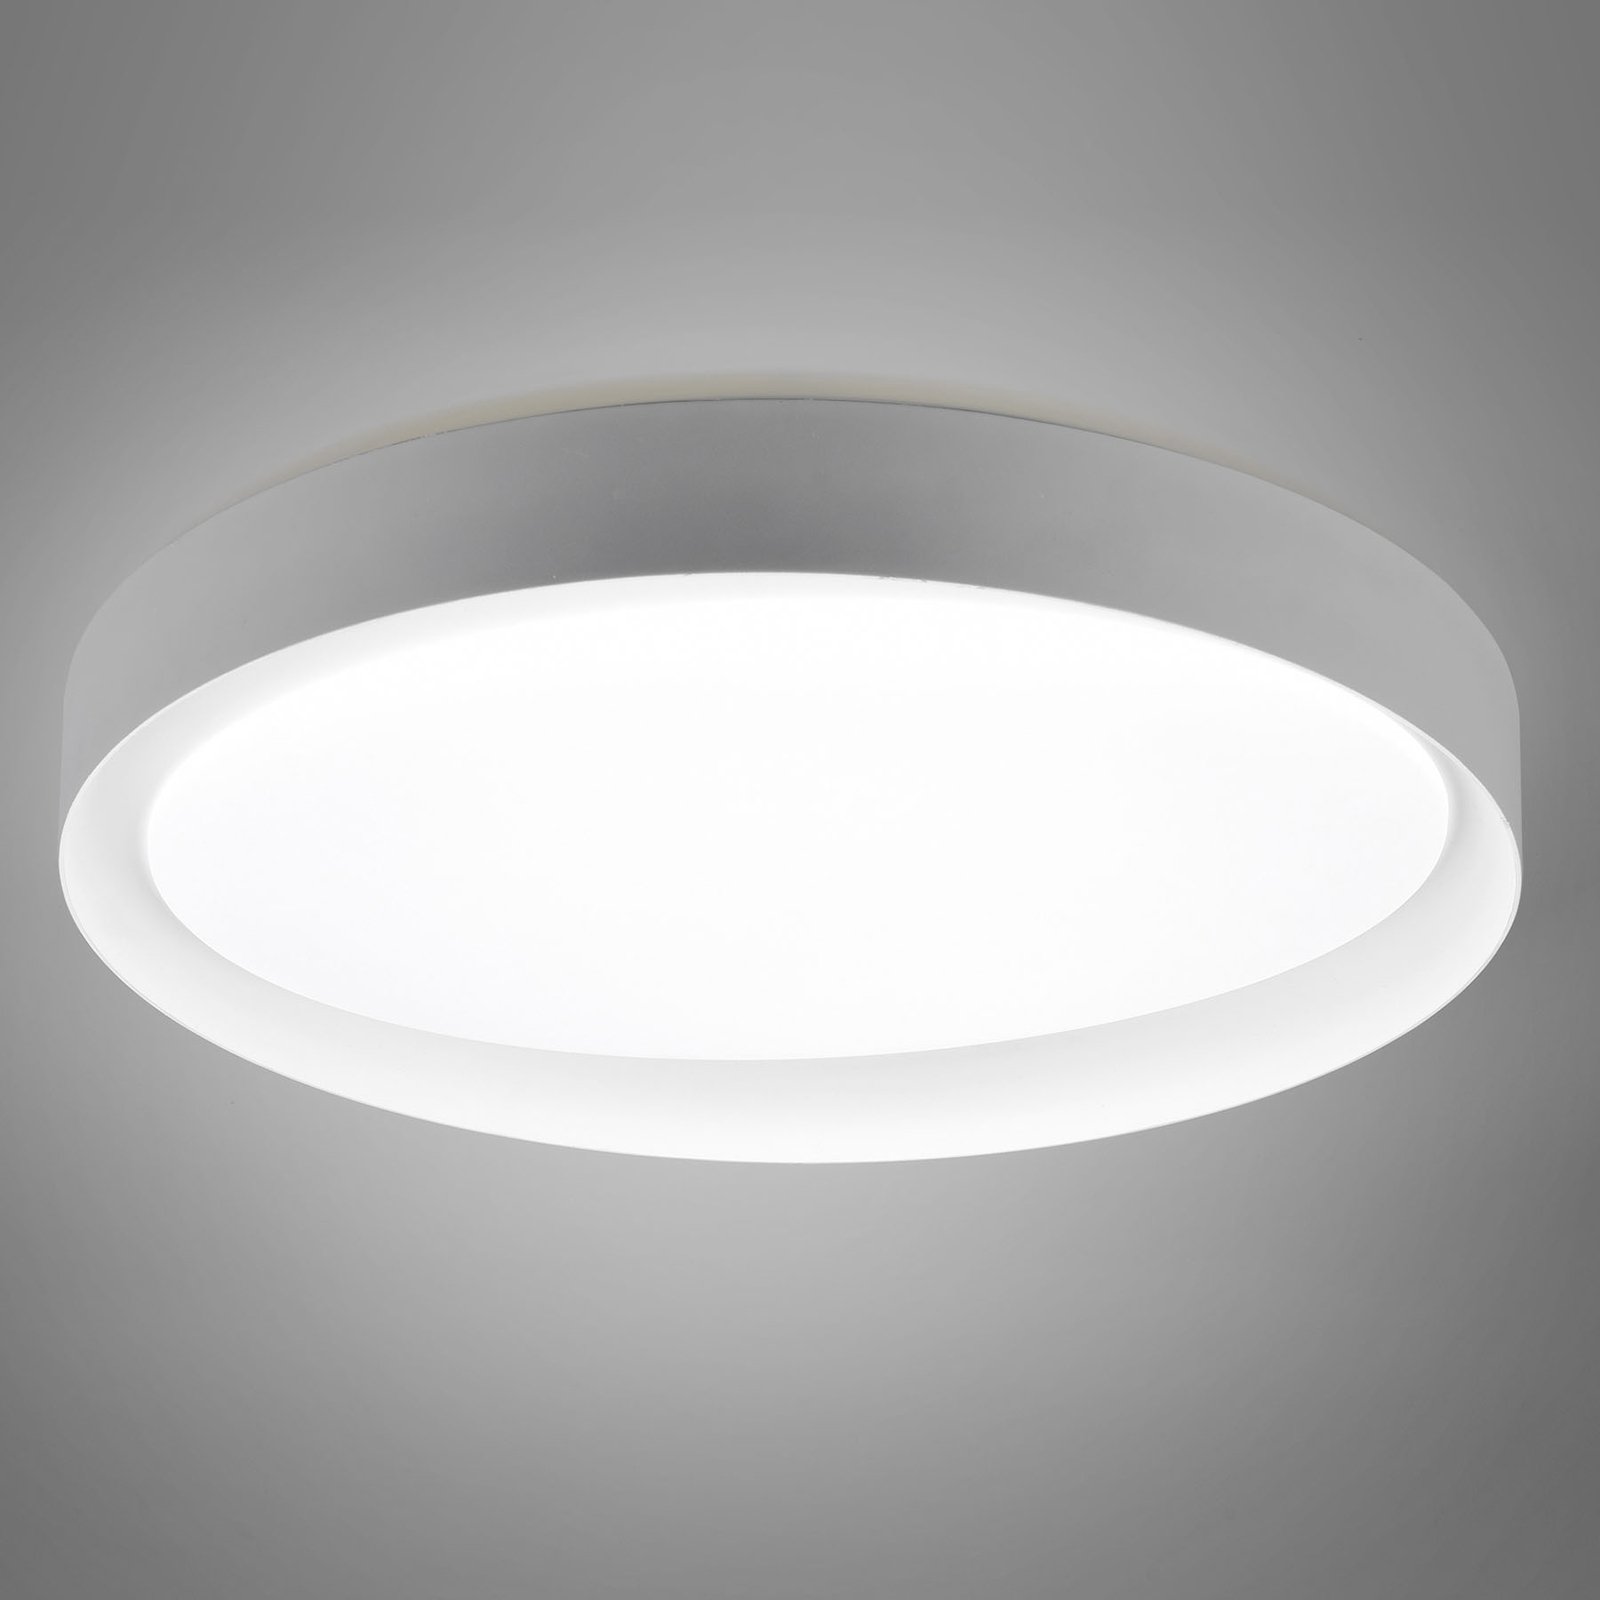 Plafonnier LED Zeta tunable white, gris/doré